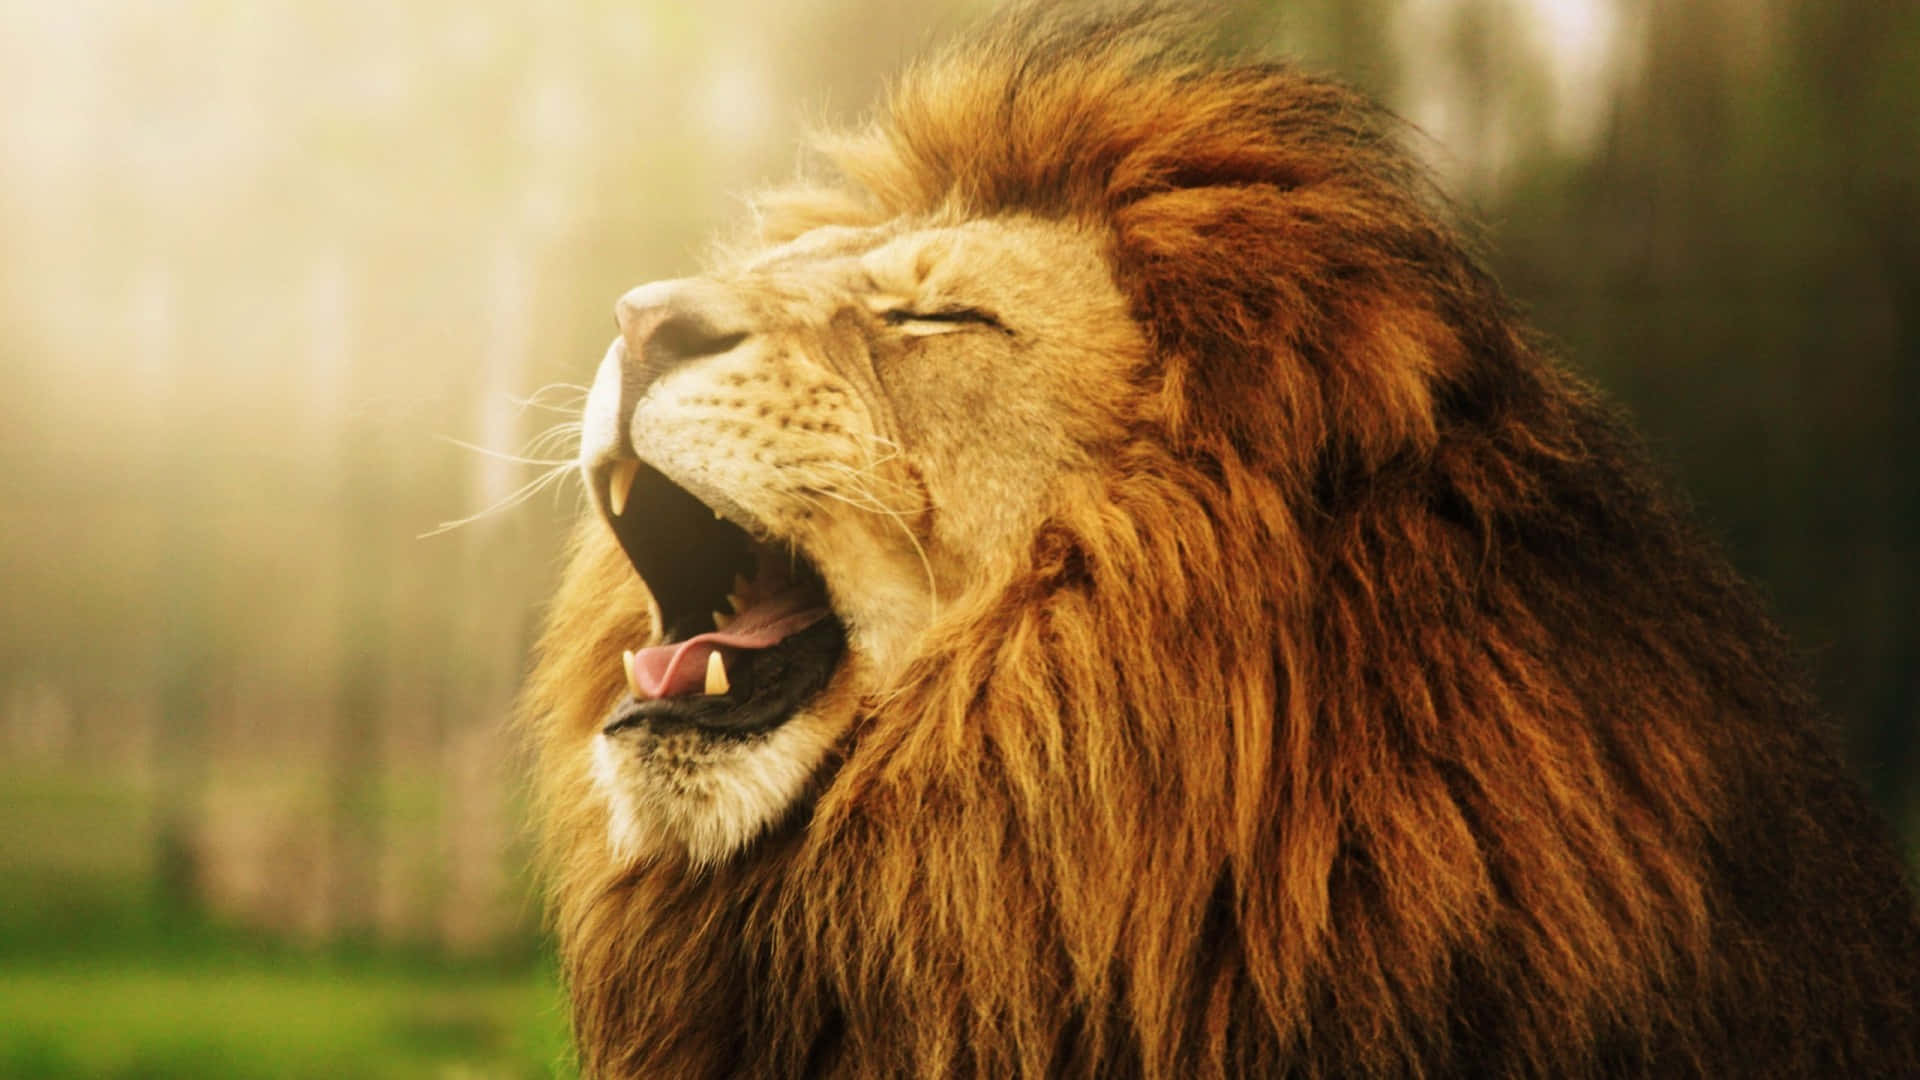 5,951 Lion Roar Black Background Images, Stock Photos & Vectors |  Shutterstock